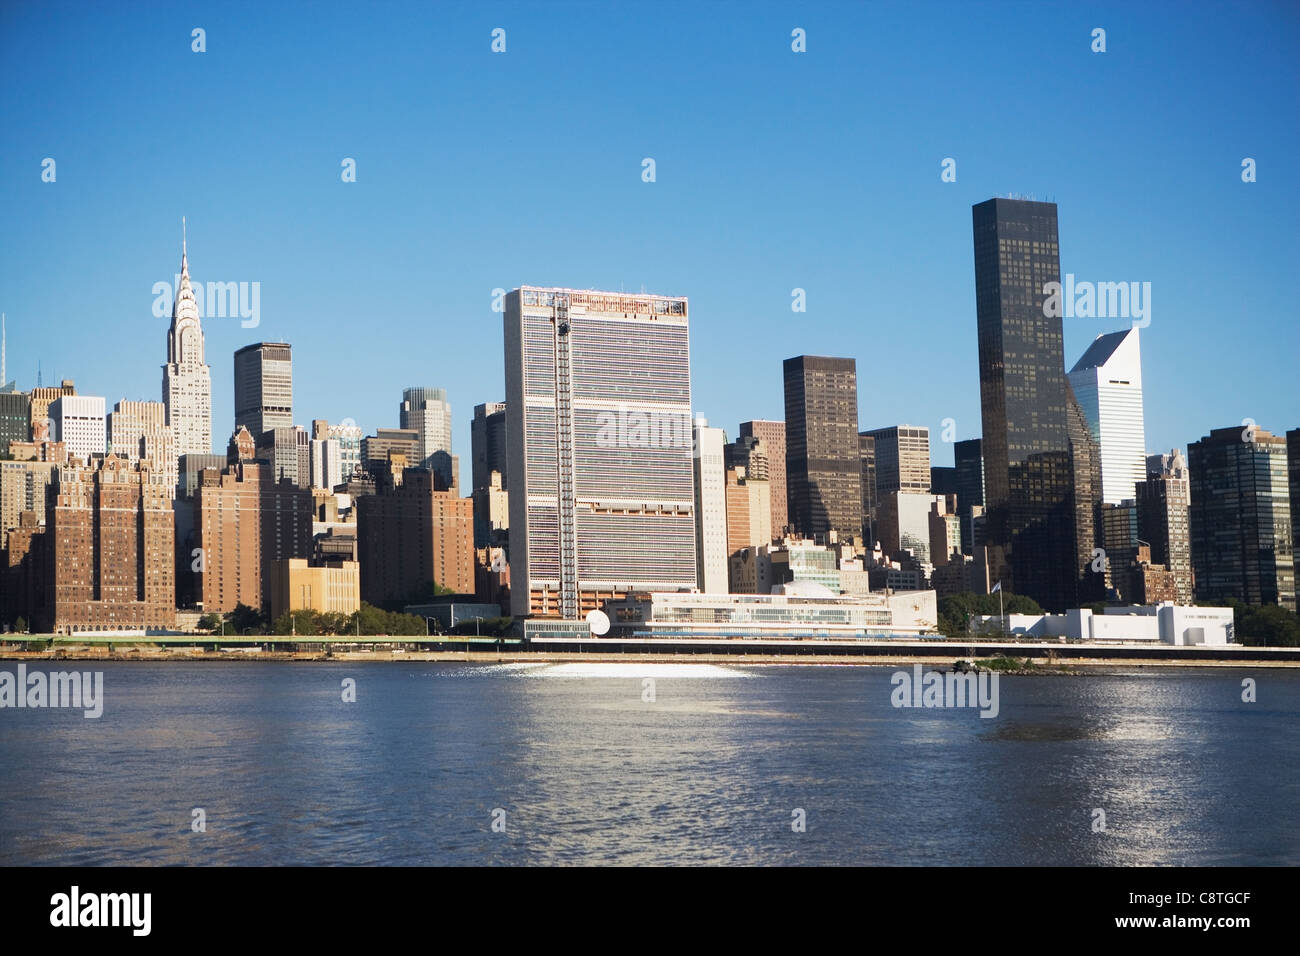 USA, New York State, New York City, Manhattan, Skyscrapers of Manhattan Stock Photo